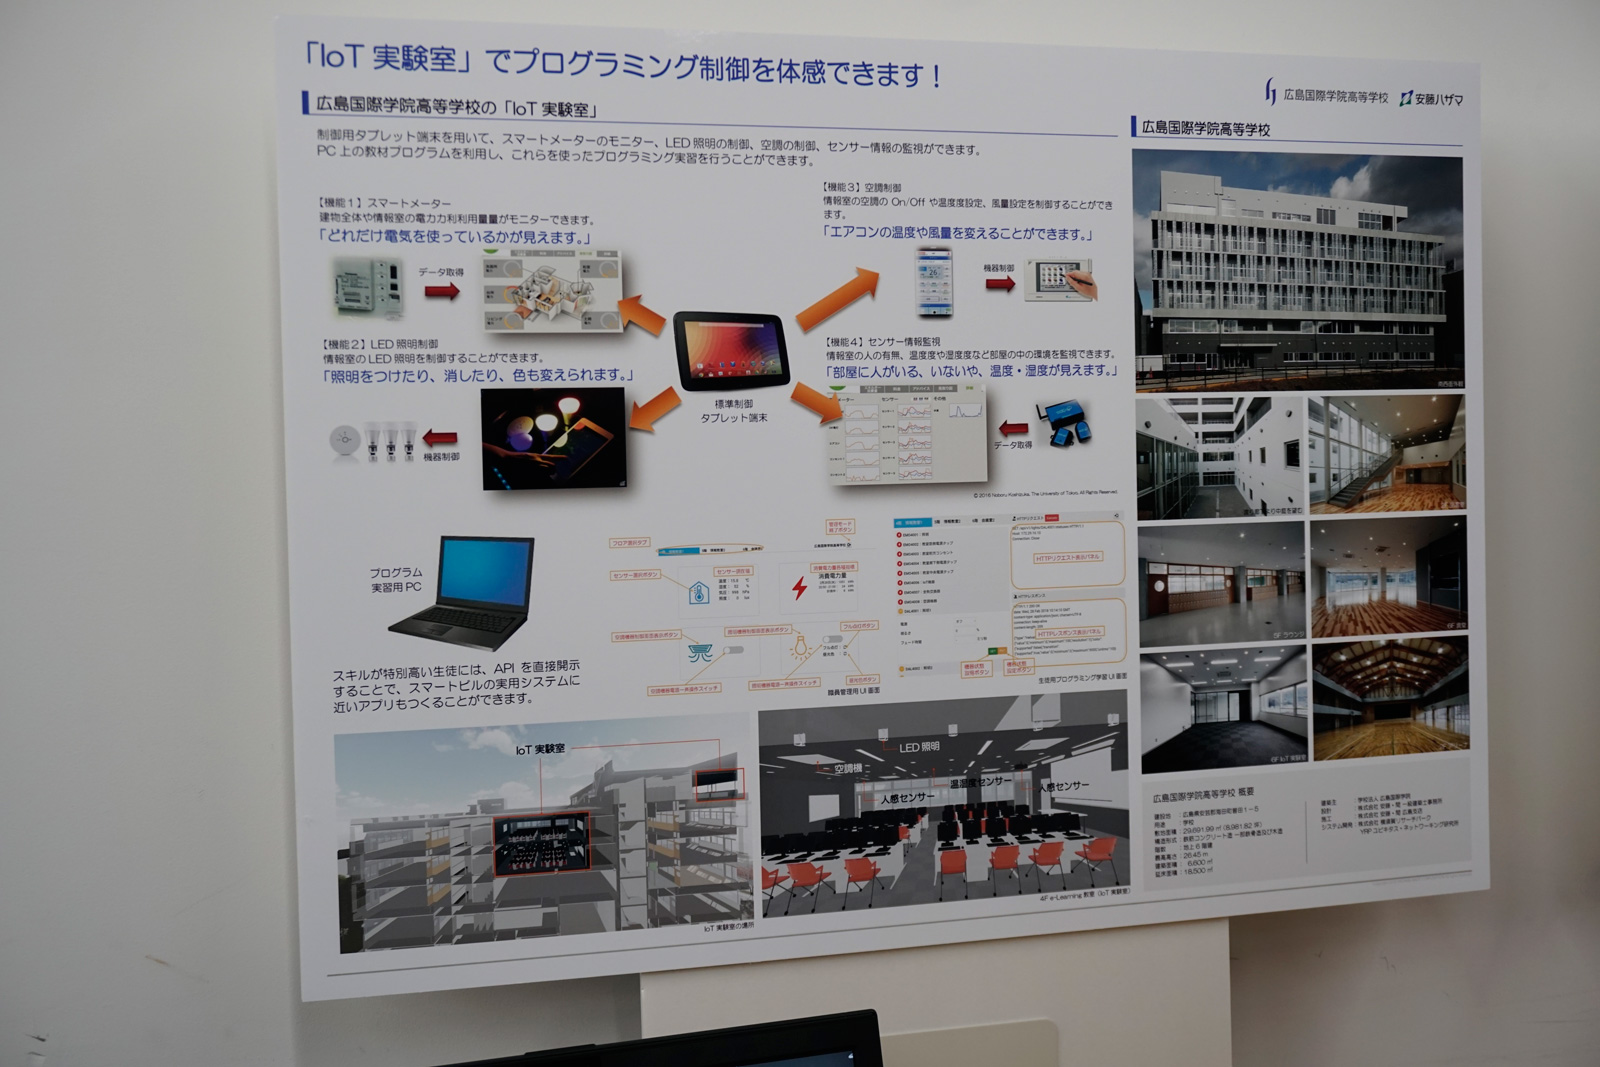 広島国際学院高等学校の教室を利用して春休みに1日教室として小学生向けに行われた「IoT実験室」